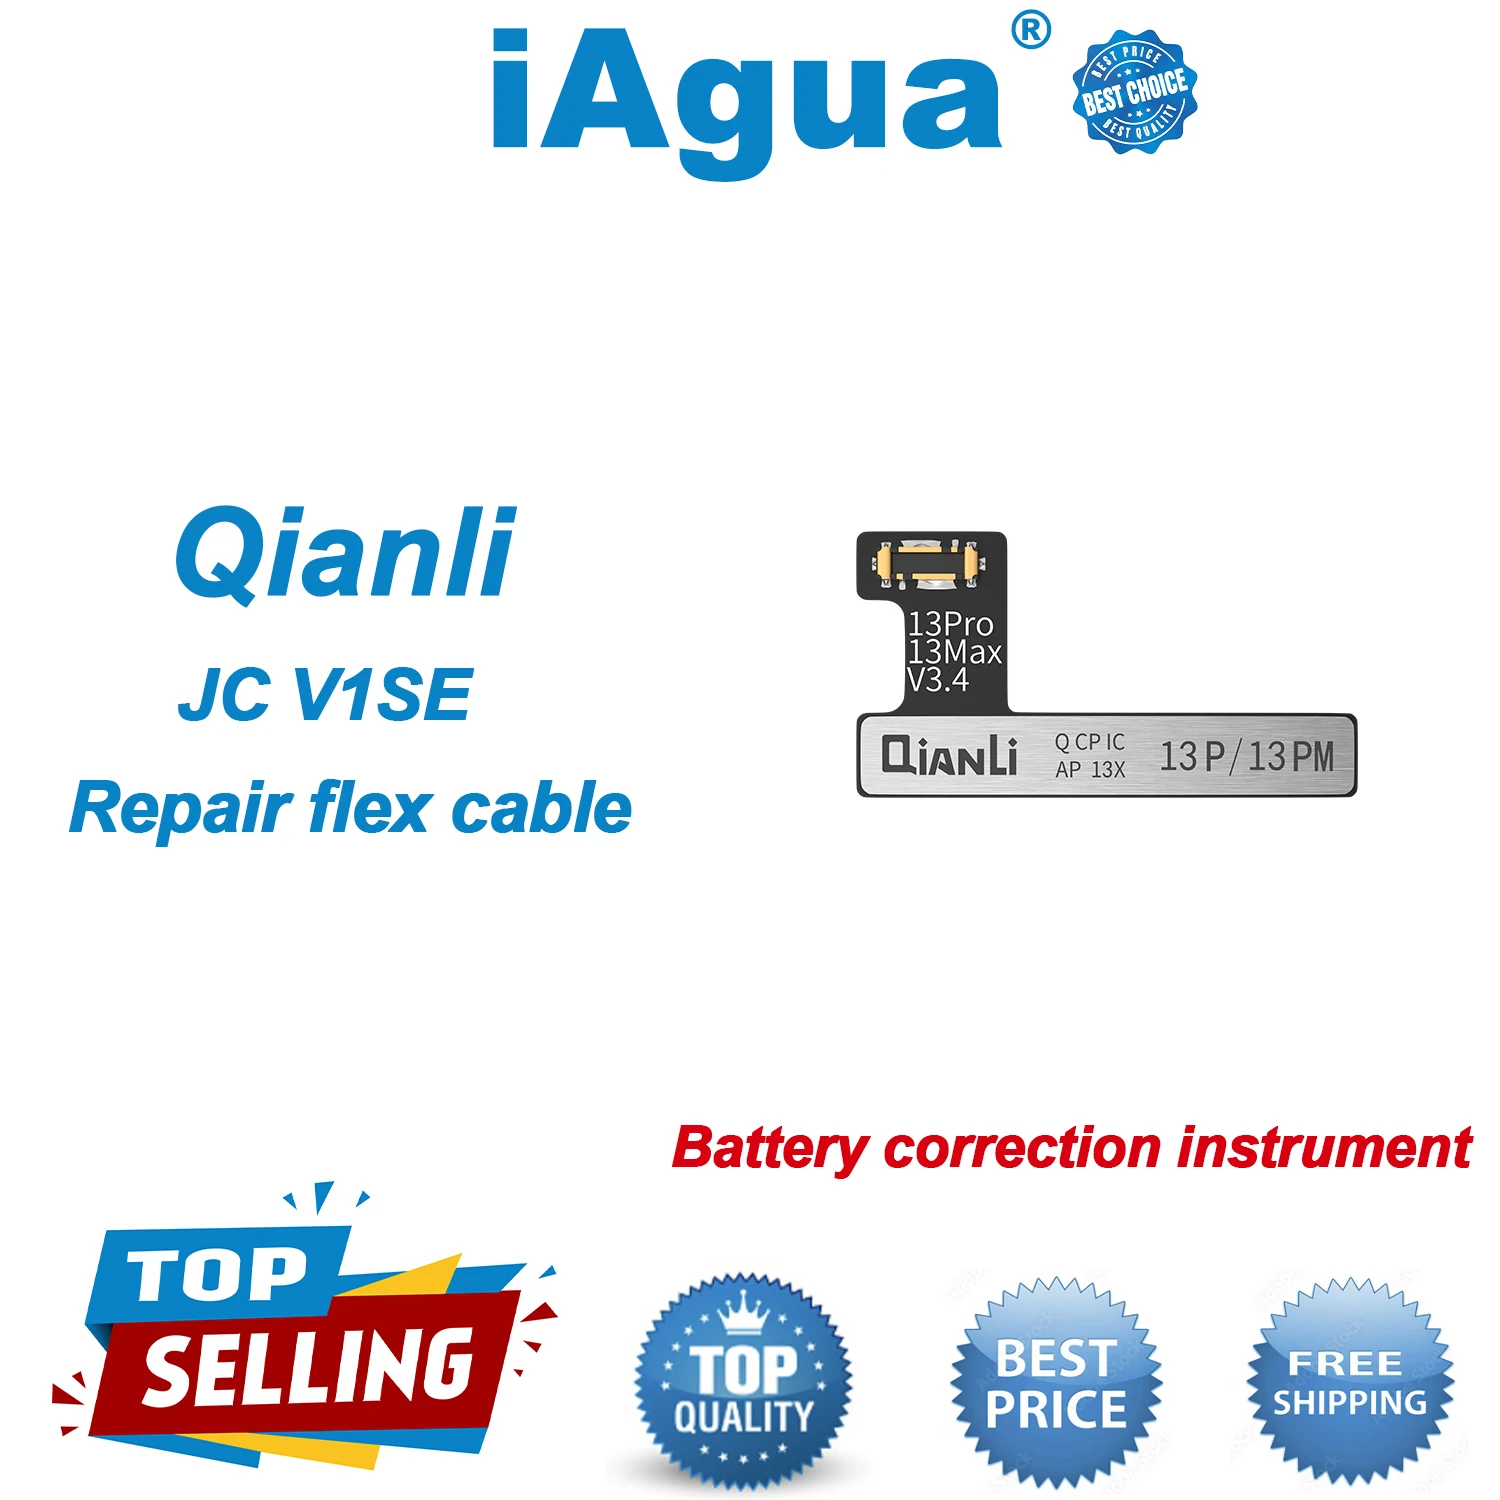 

Плата JC QianLi Luban i2c для ремонта батареи, гибкий шлейф для iPhone 13, 12, 11 Pro Max, V1S, icopy Plus, бирка Apollo на замену кабеля для ремонта, 2 шт.